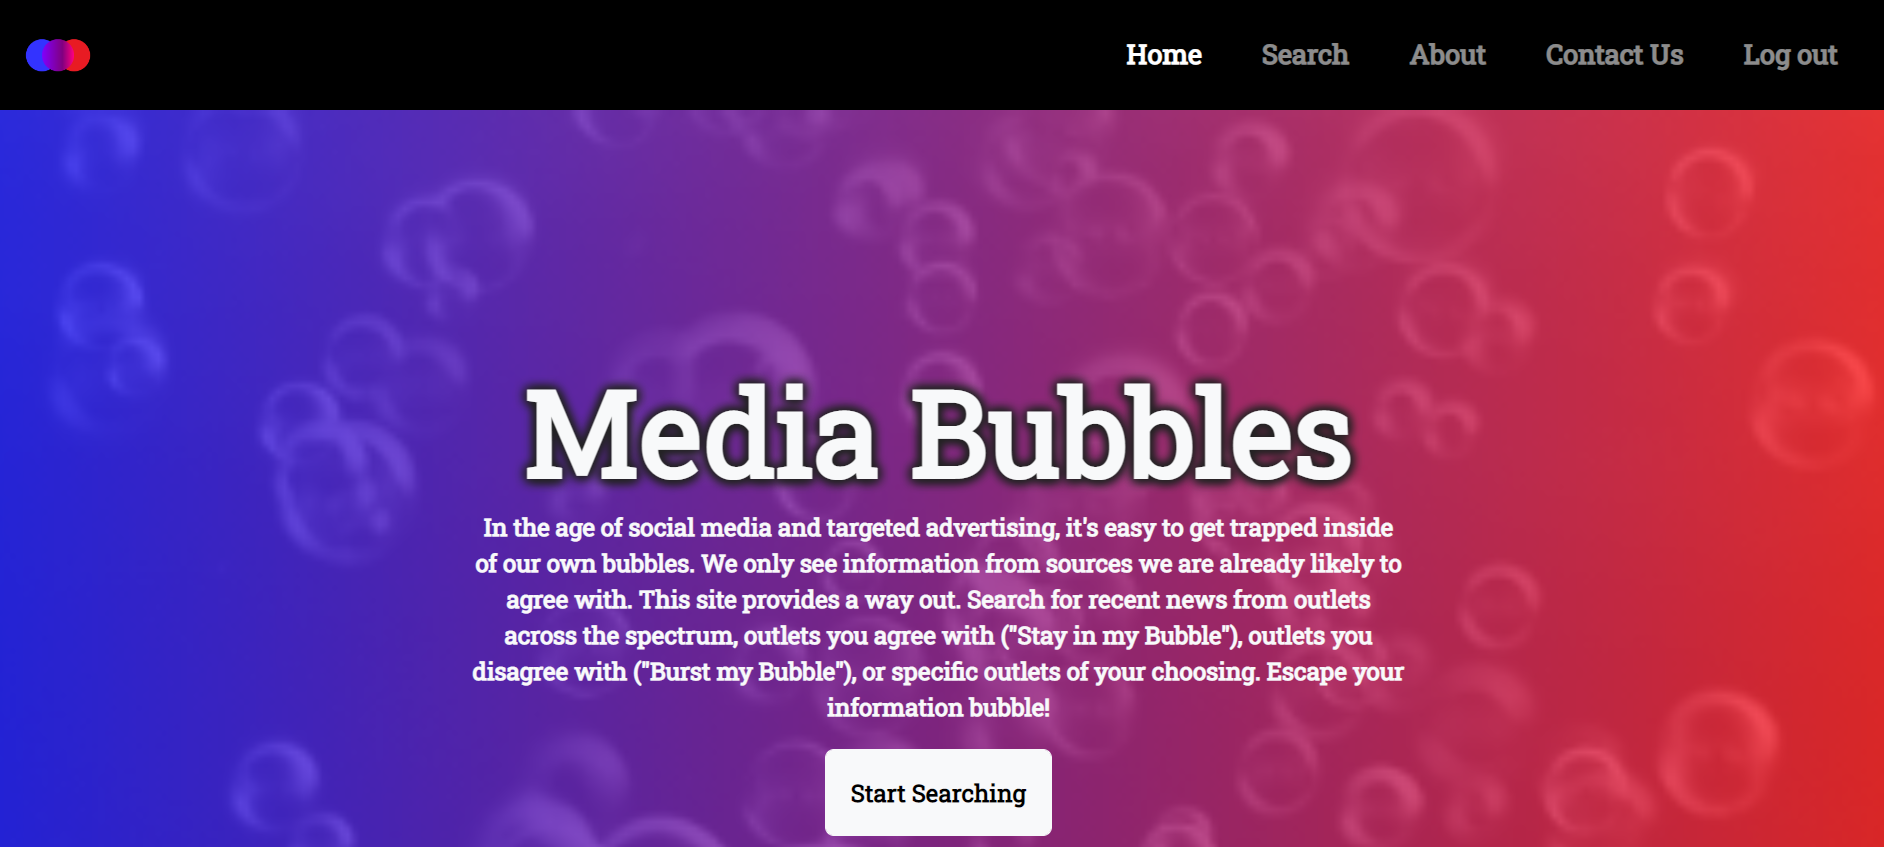 Media Bubbles home screen